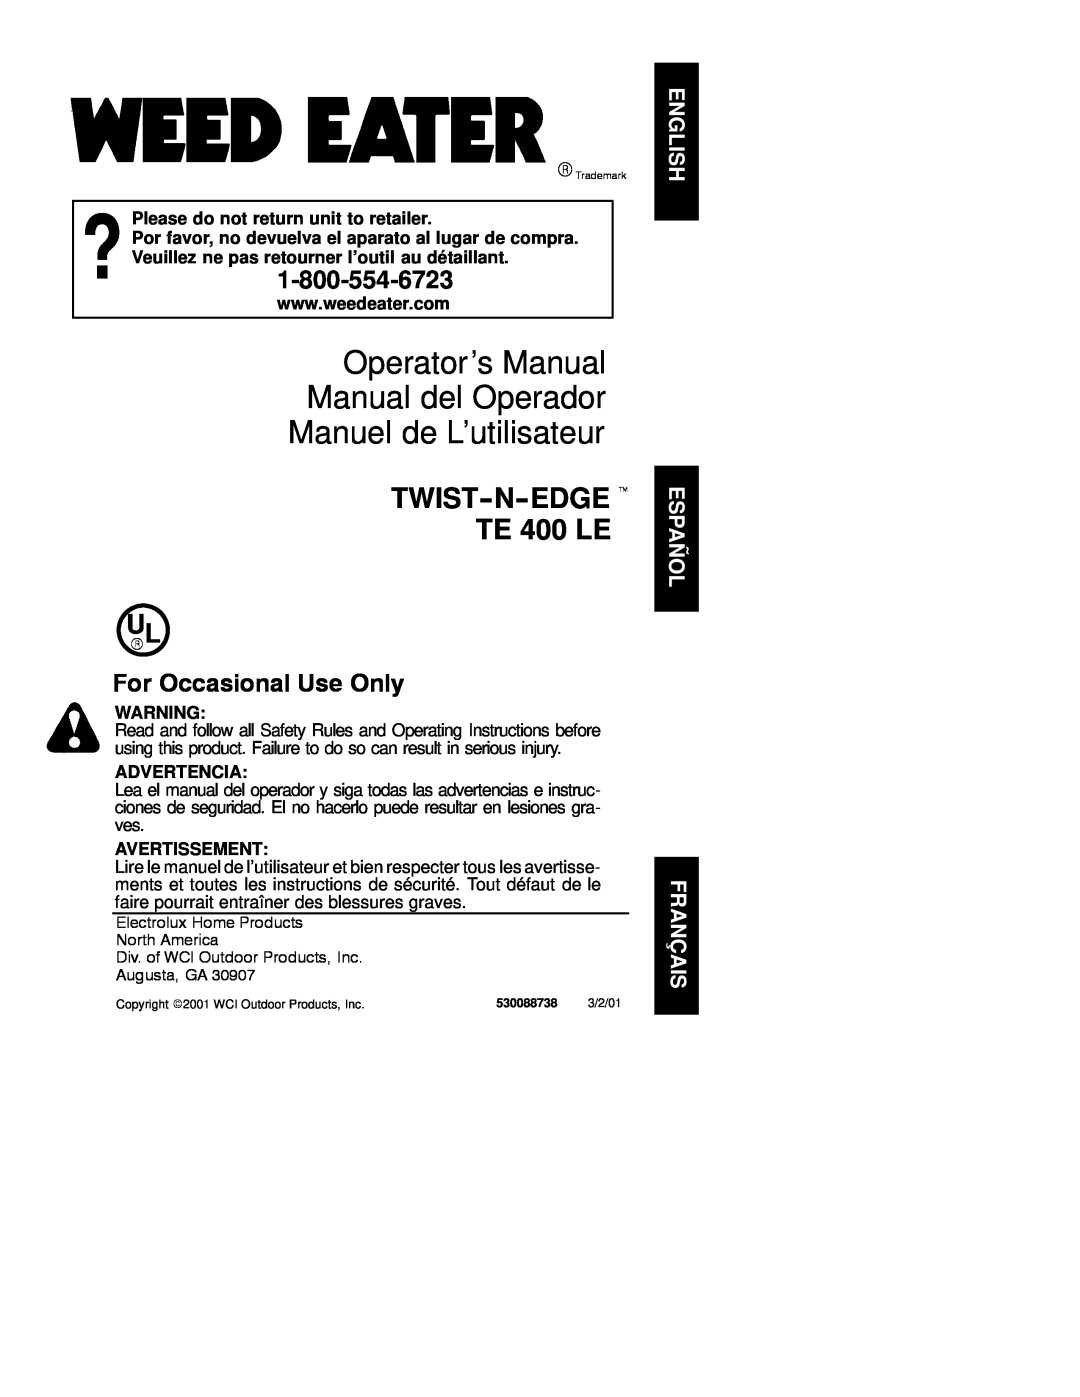 Weed Eater 530088738 operating instructions Operator’s Manual Manual del Operador Manuel de L’utilisateur, Advertencia 